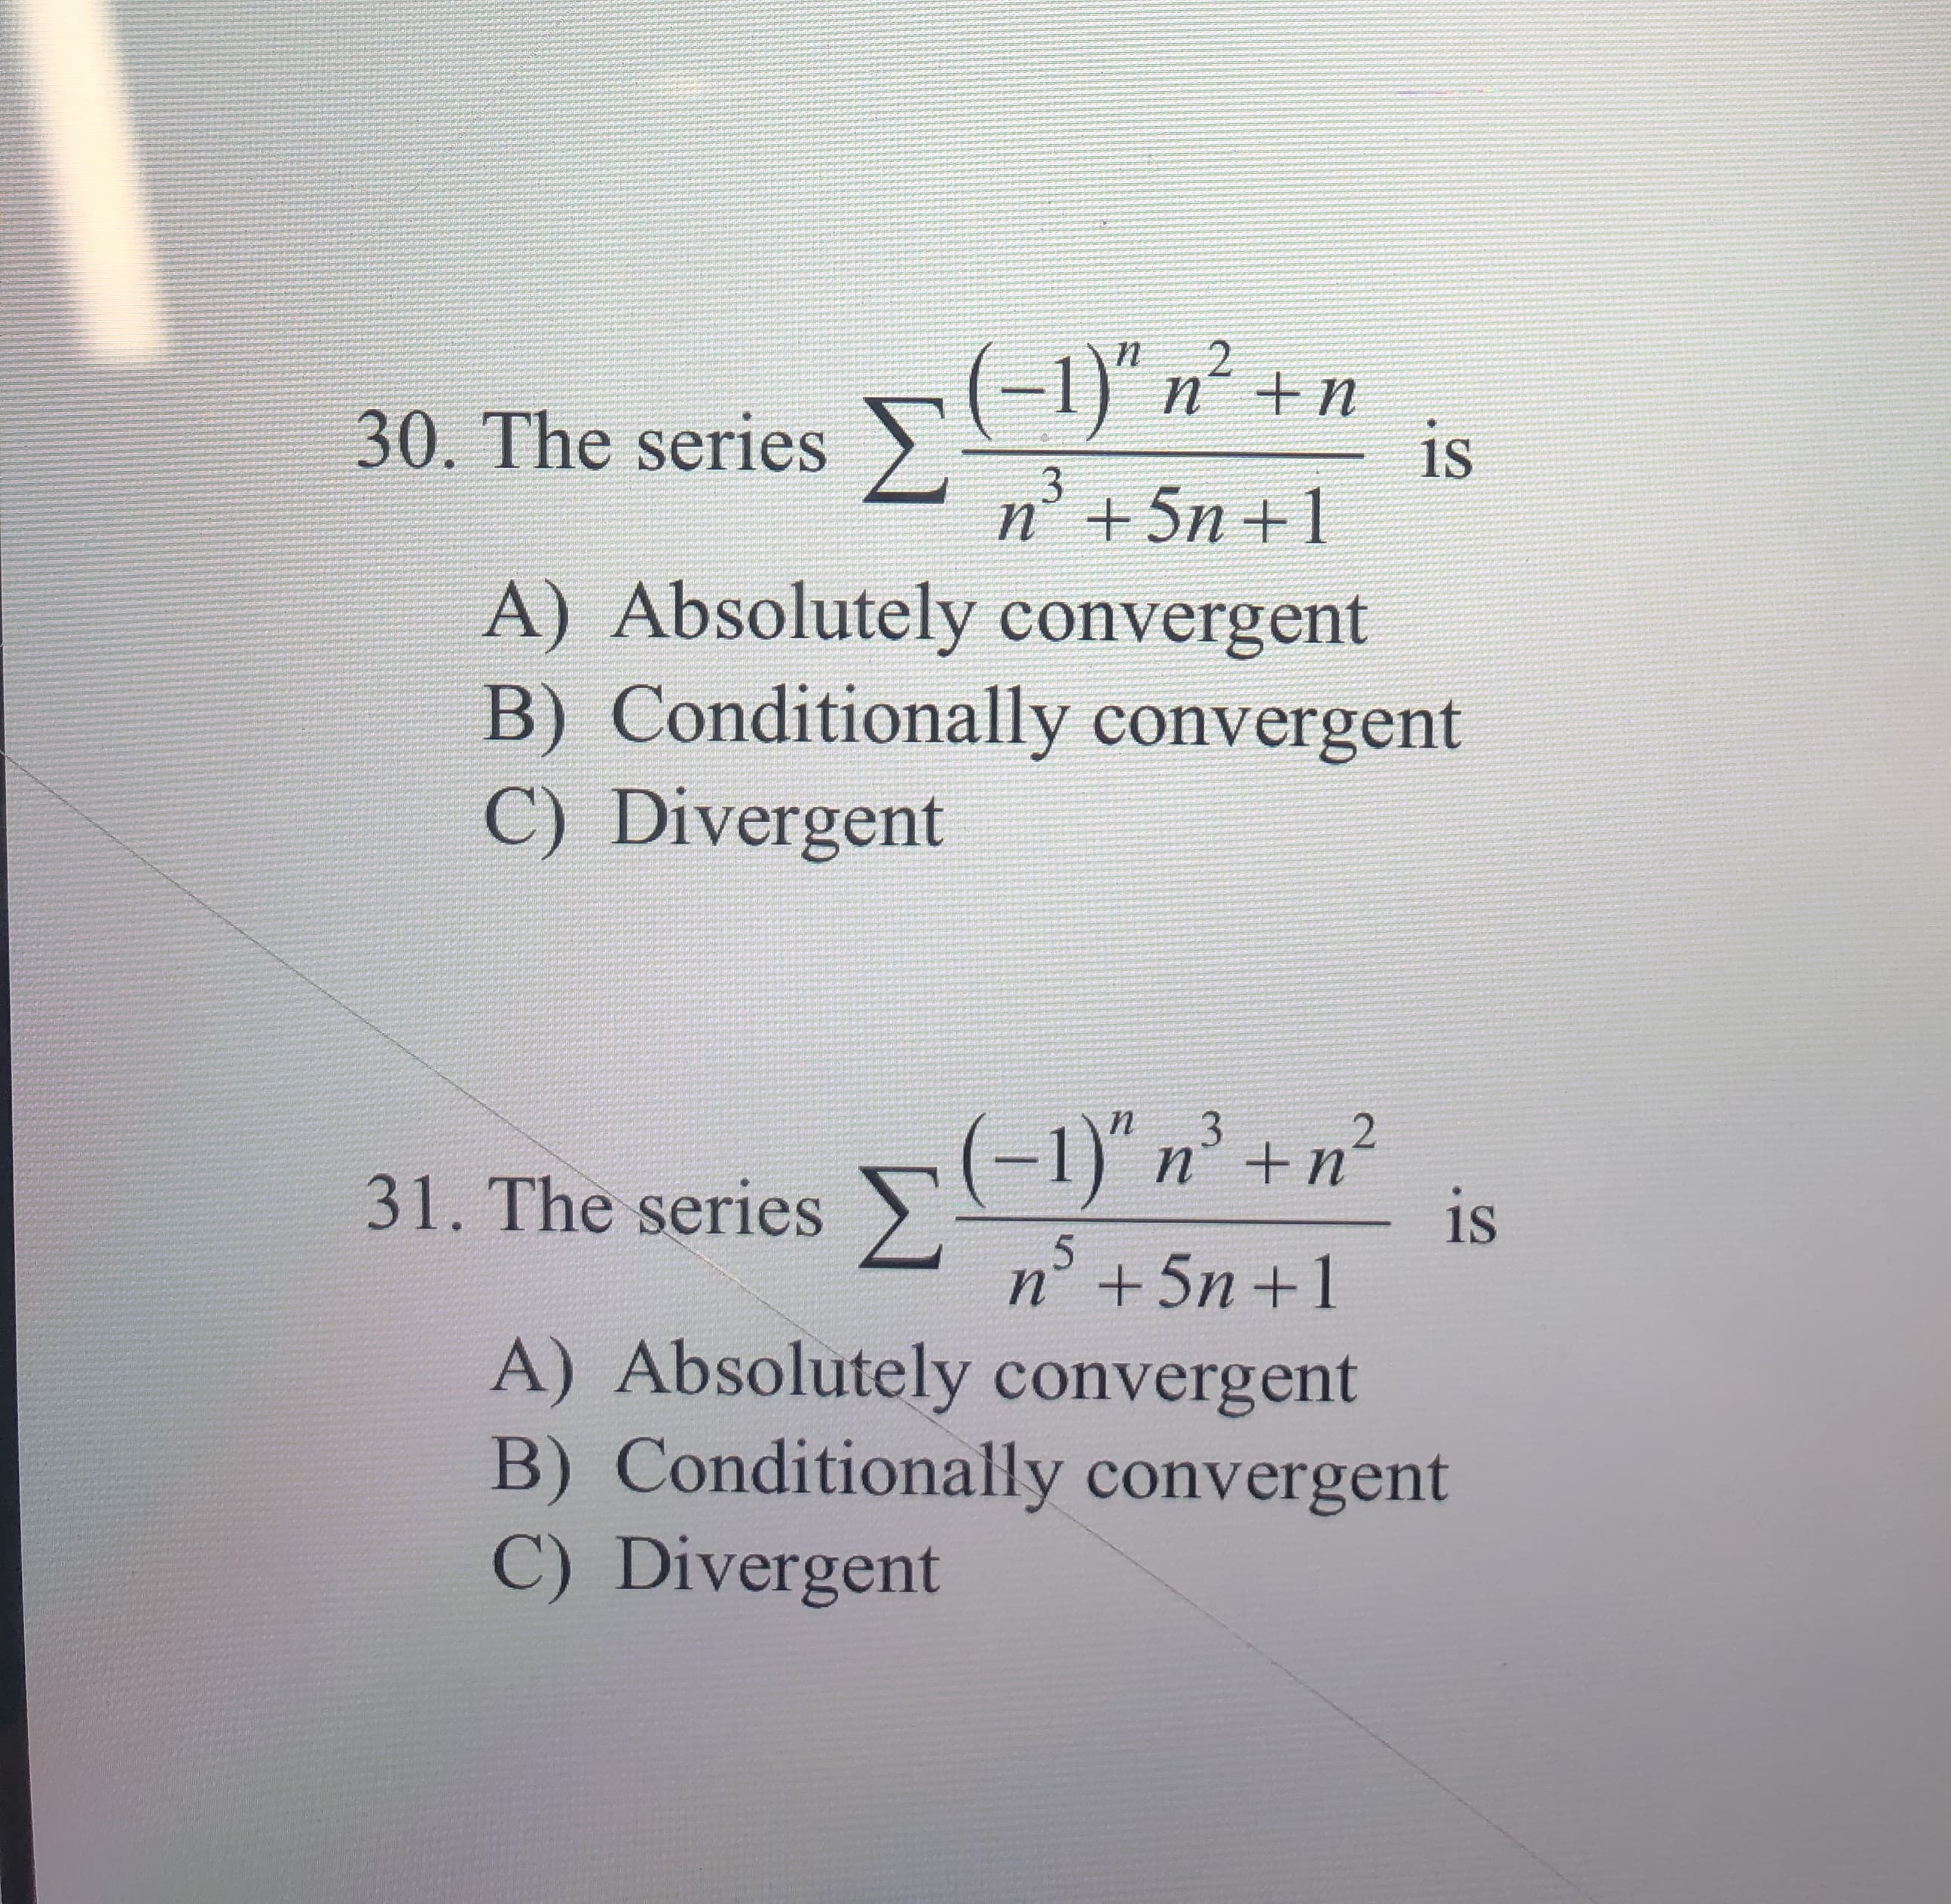 (-1)" n +n
2
30. The series
is
$3
n5n 1
A) Absolutely convergent
B) Conditionally convergent
C) Divergent
2
31. The series n
is
n+5n 1
A) Absolutely convergent
B) Conditionally convergent
C) Divergent
